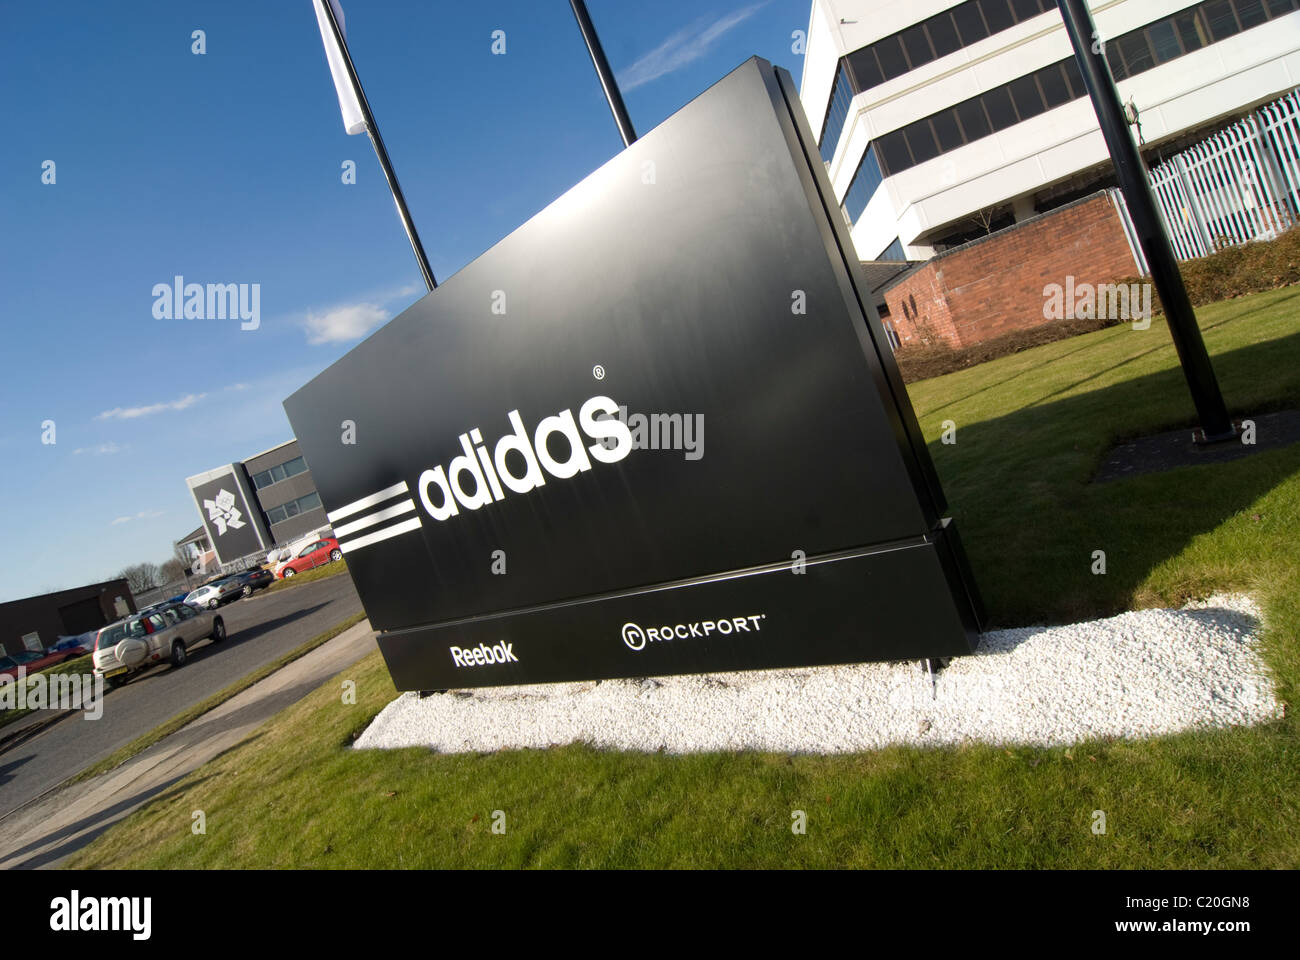 adidas uk stockport